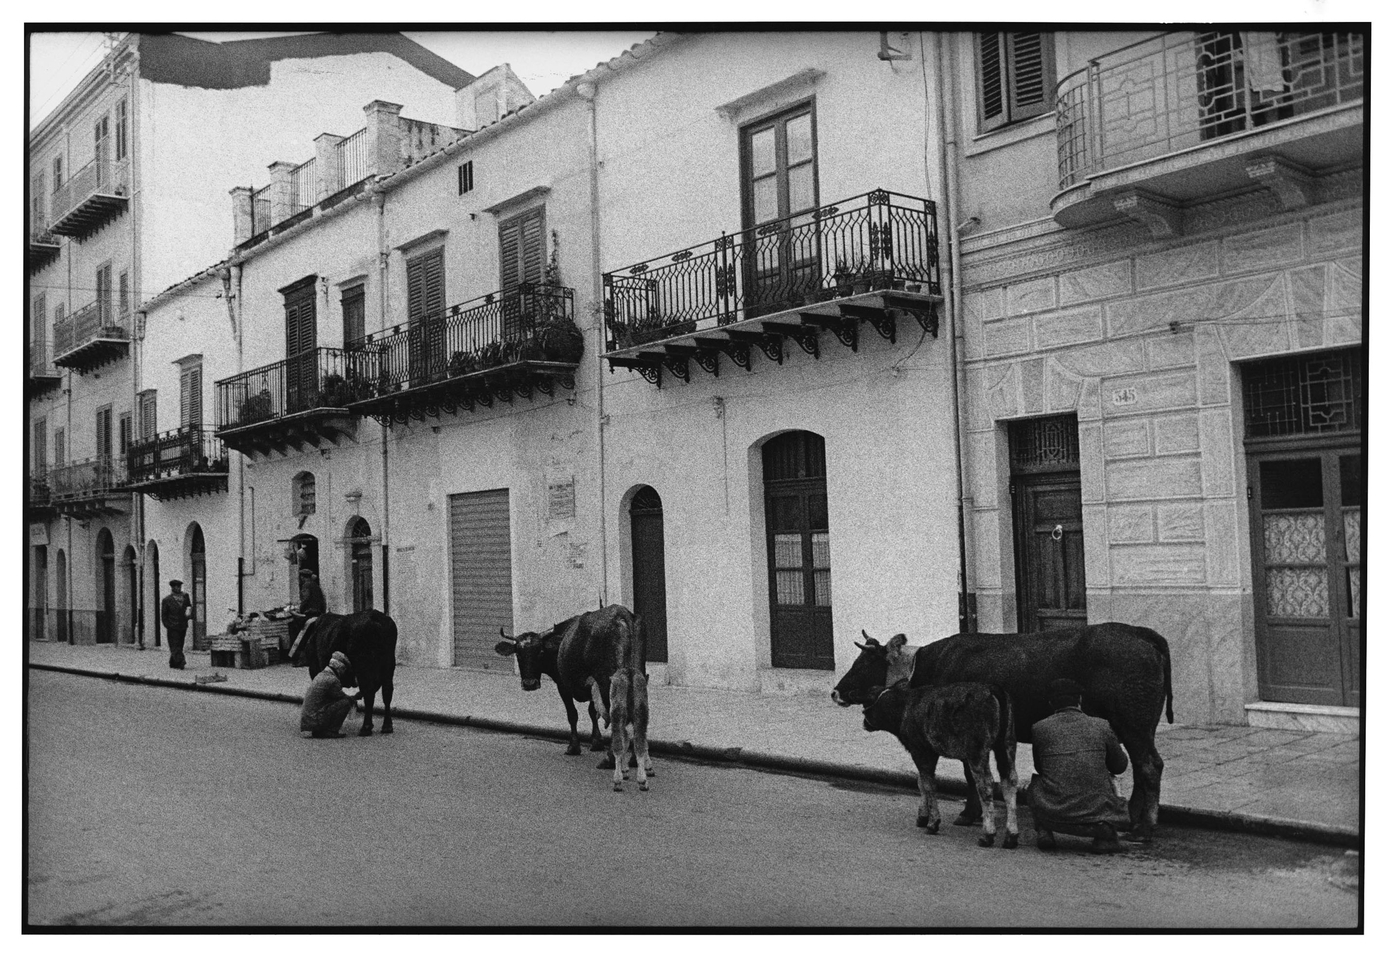 Sicilia, 002-049-58
Uomini mungono vacche in strada, 1962
Partinico (Italia)